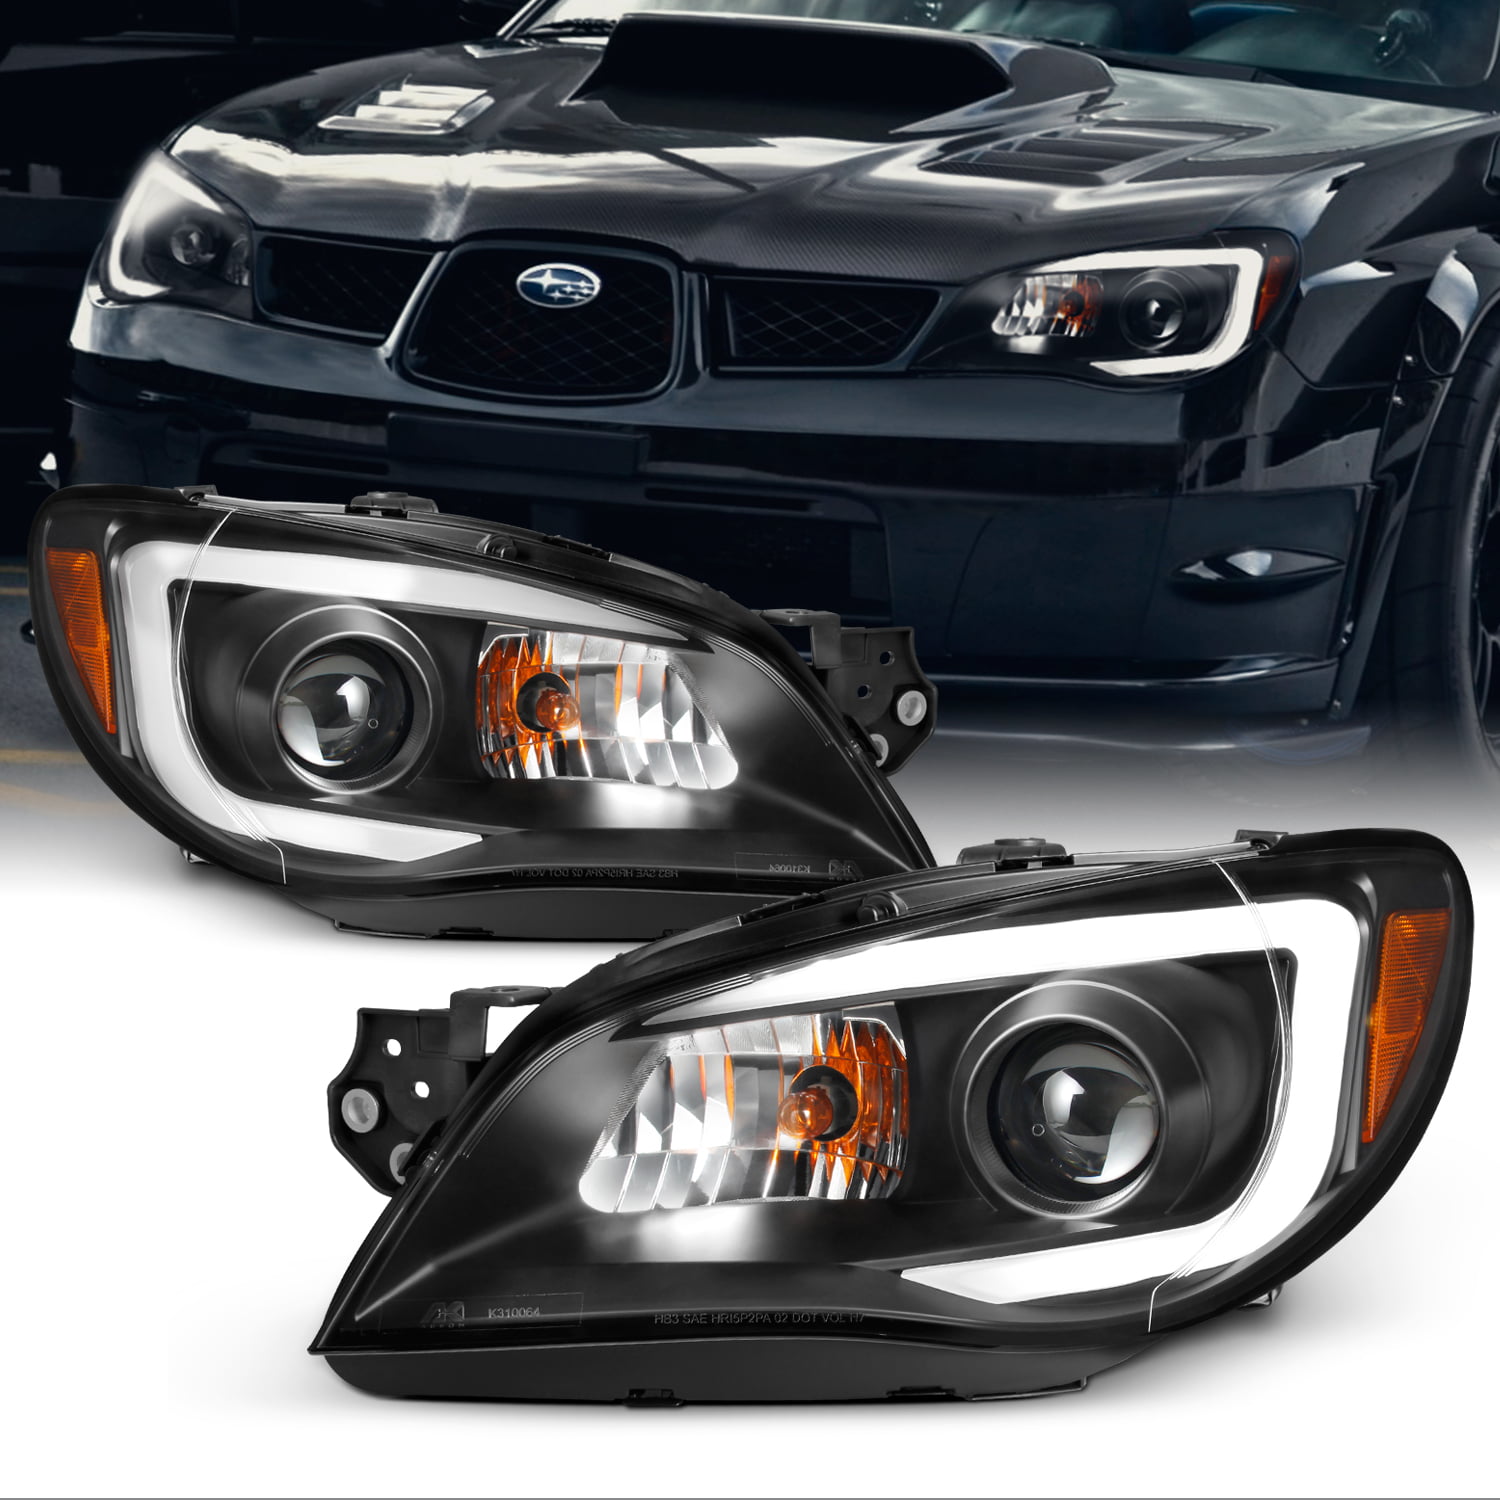 Clear Projector LED DRL Light Bar Headlights FITS Subaru Impreza Wrx 08-14